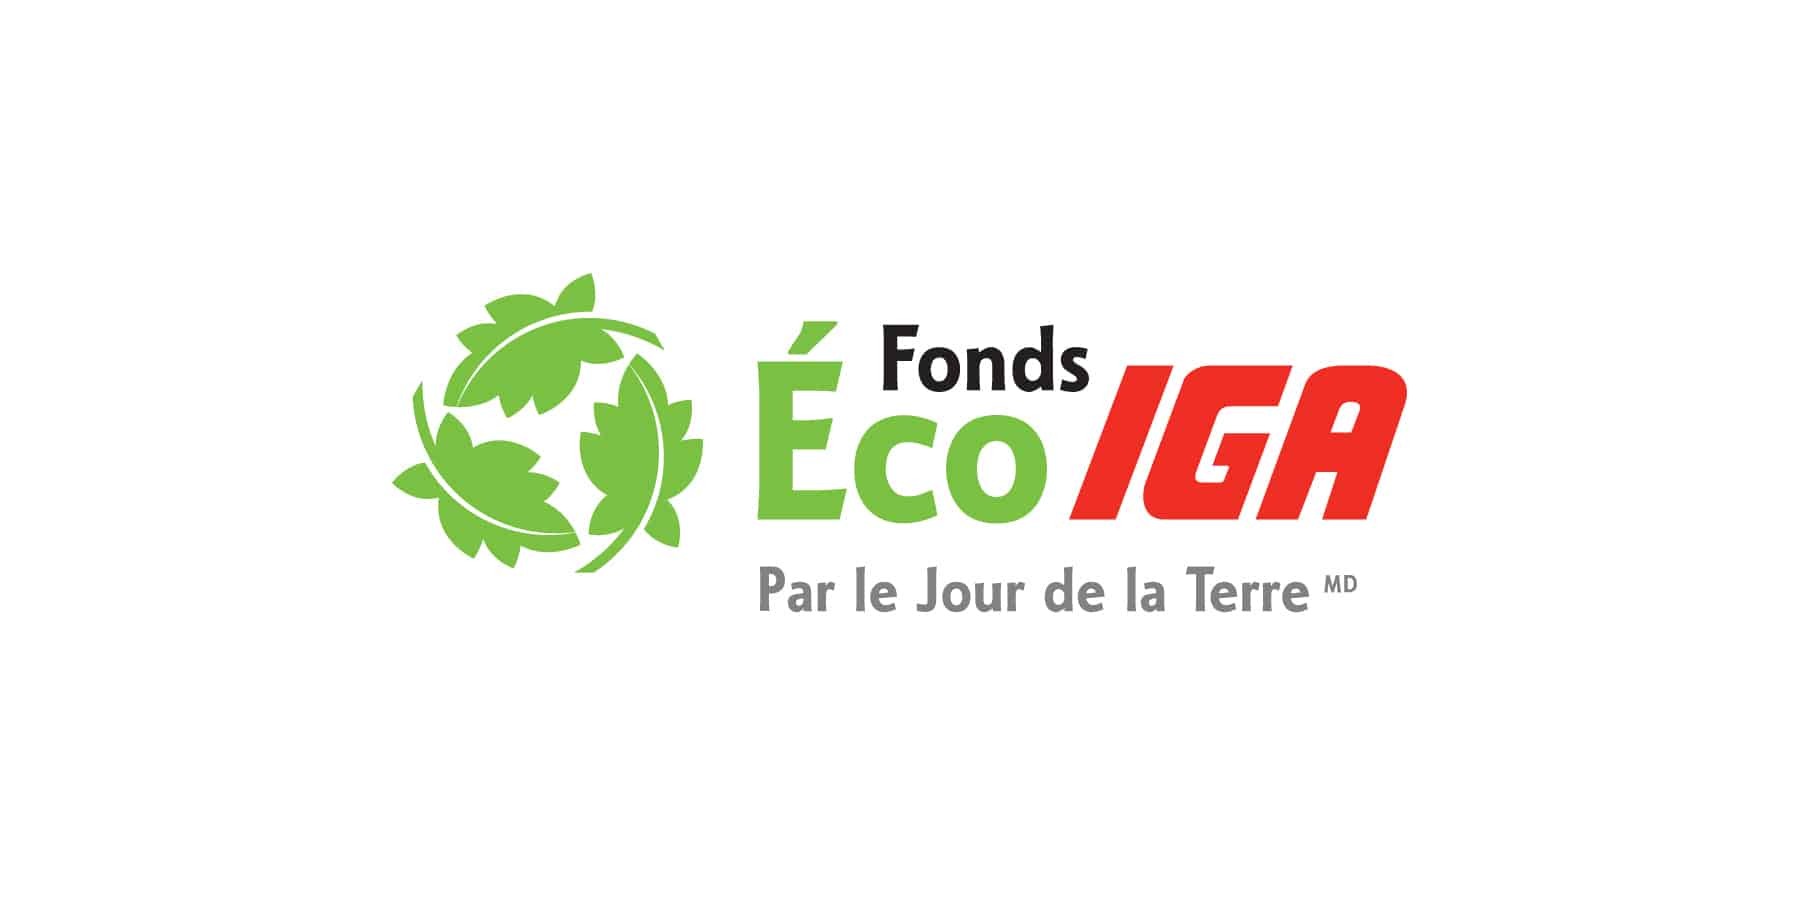 Fonds Éco IGA - Estrie (Logo)